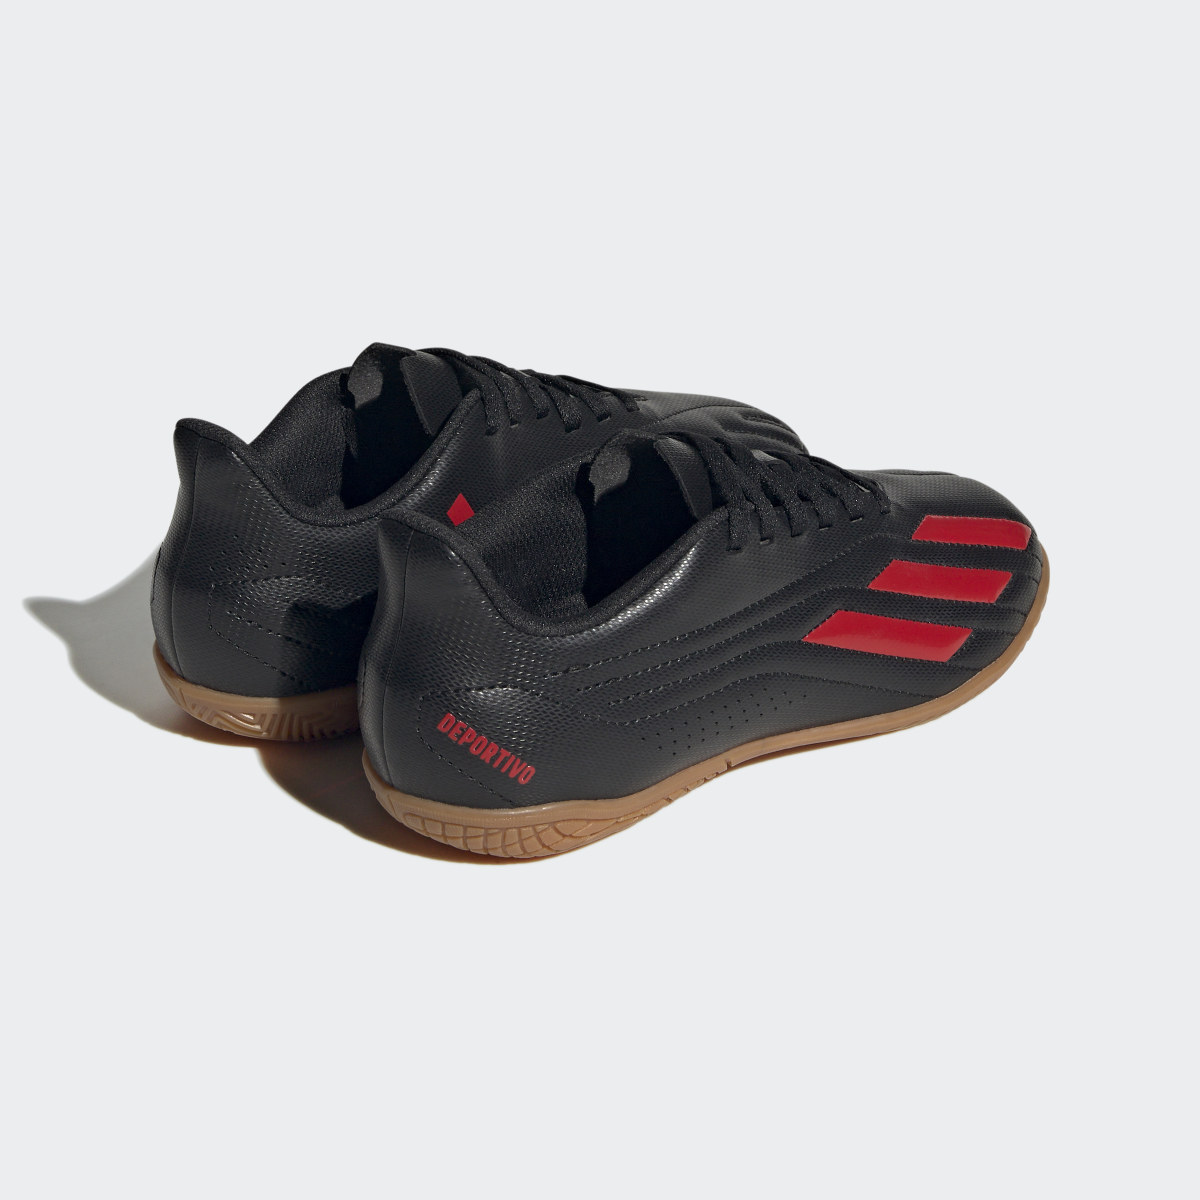 Adidas Deportivo II Indoor Boots. 6